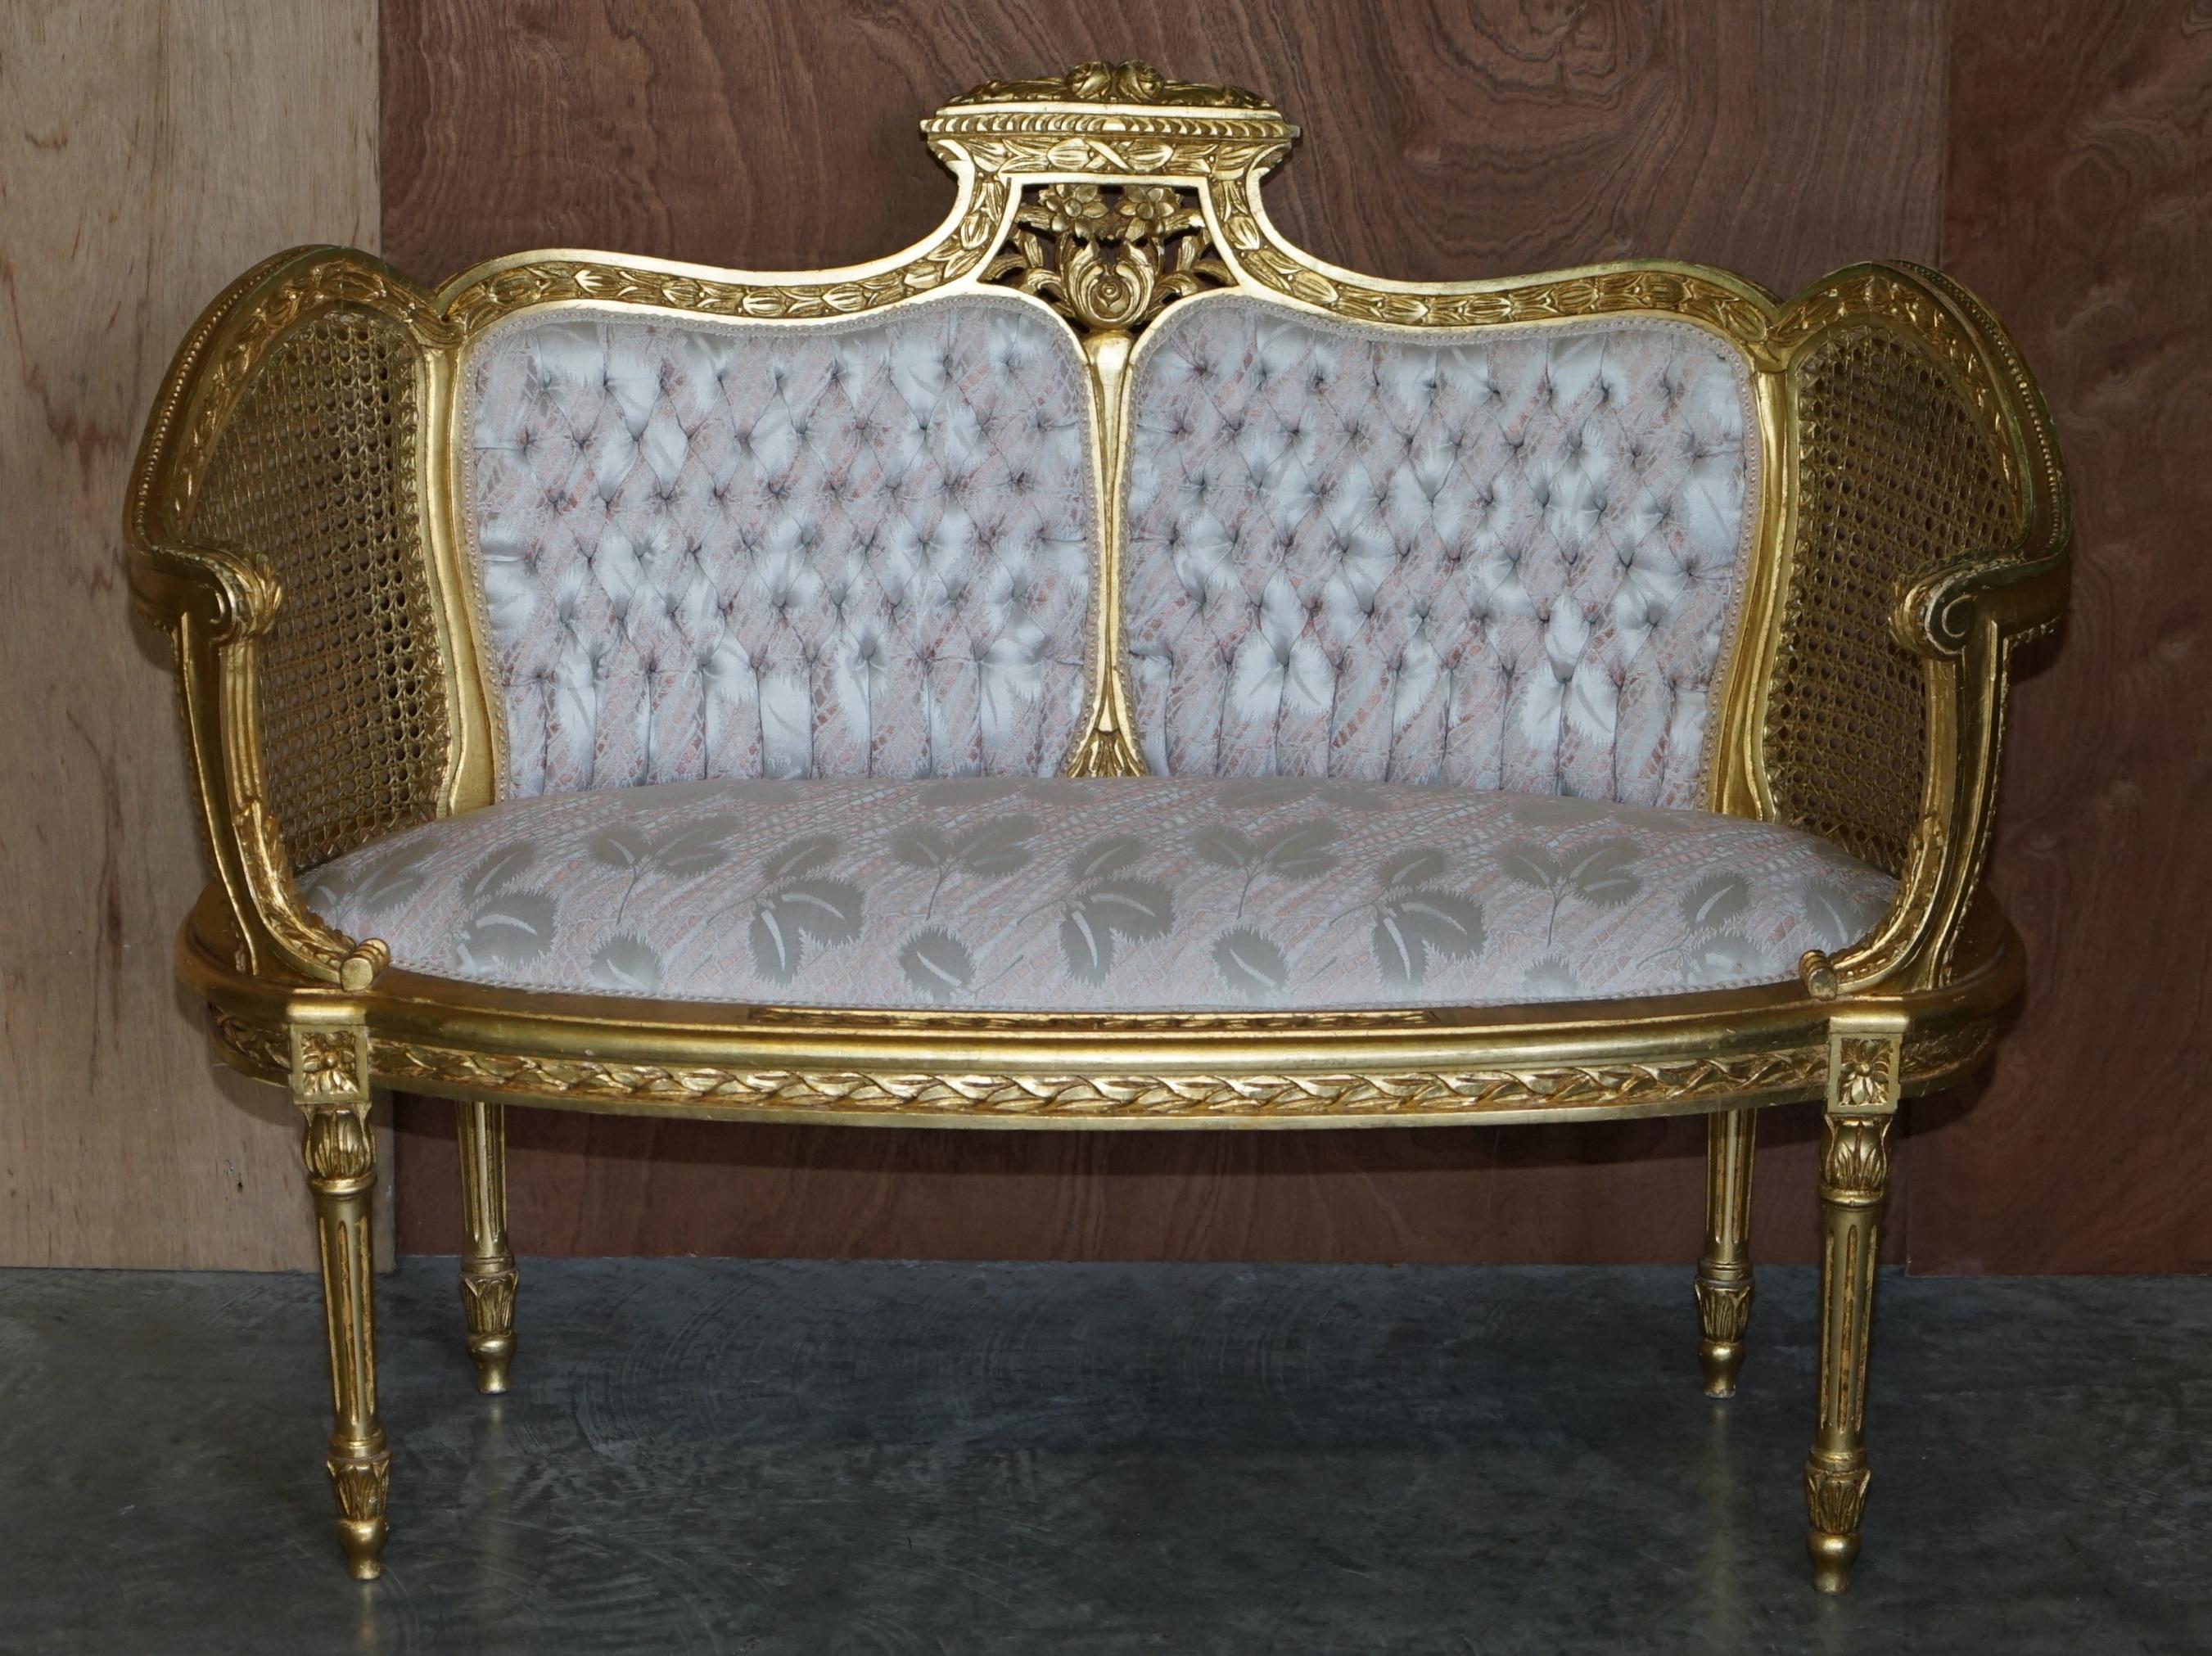 Nous sommes ravis d'offrir ce superbe canapé bergère original vers 1860-1870 de style Napoléon III Louis XVI qui fait partie d'une suite. 

Ce canapé est accompagné d'une paire de fauteuils de salon assortis qui sont listés dans mes autres